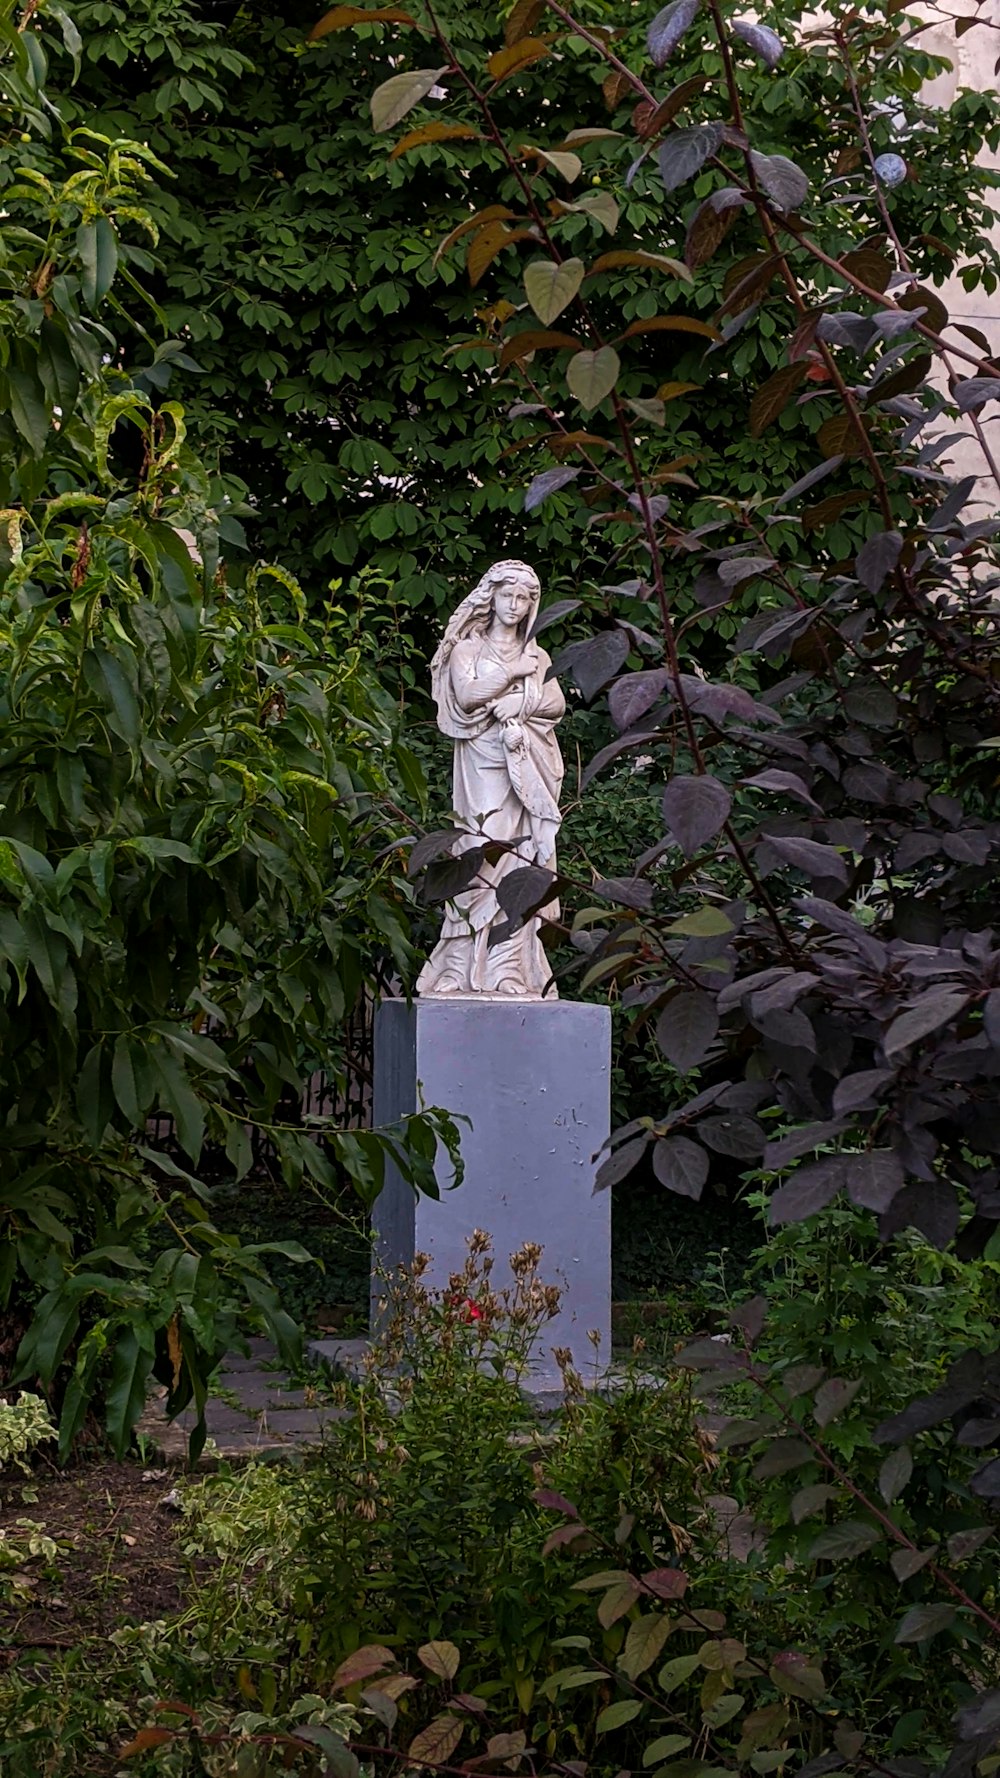 Frau im Kleid Statue in der Nähe von grünen Pflanzen